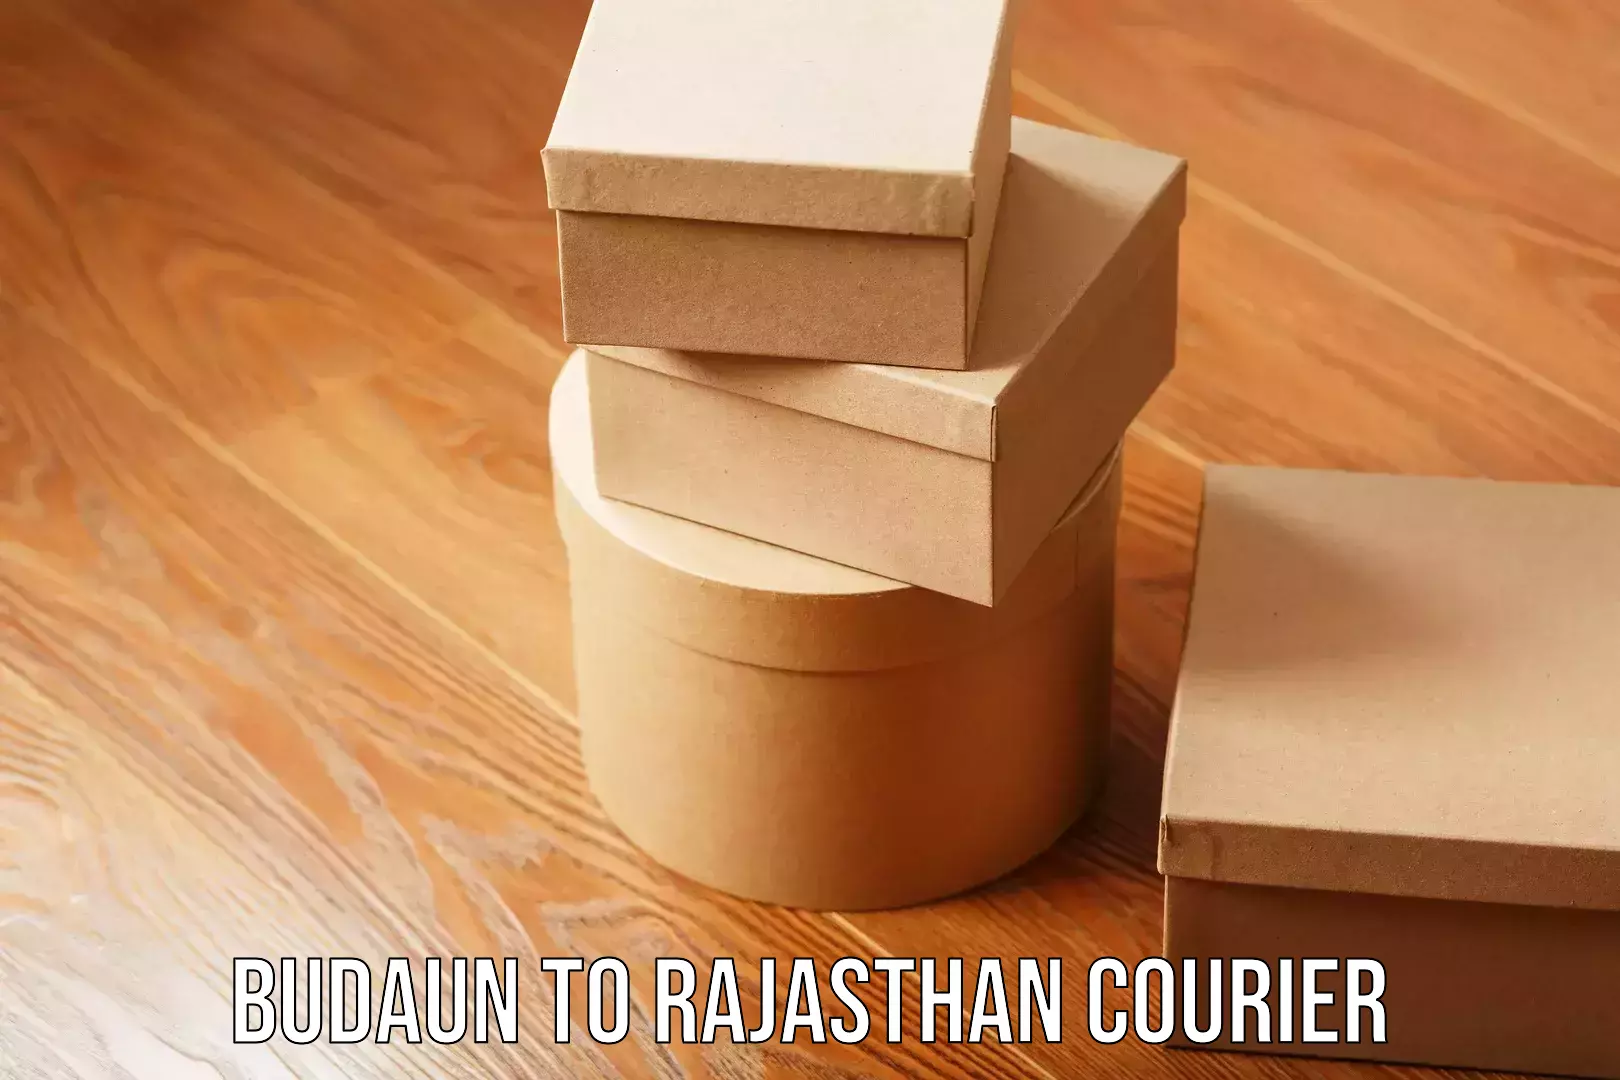 Digital courier platforms Budaun to Rajasthan